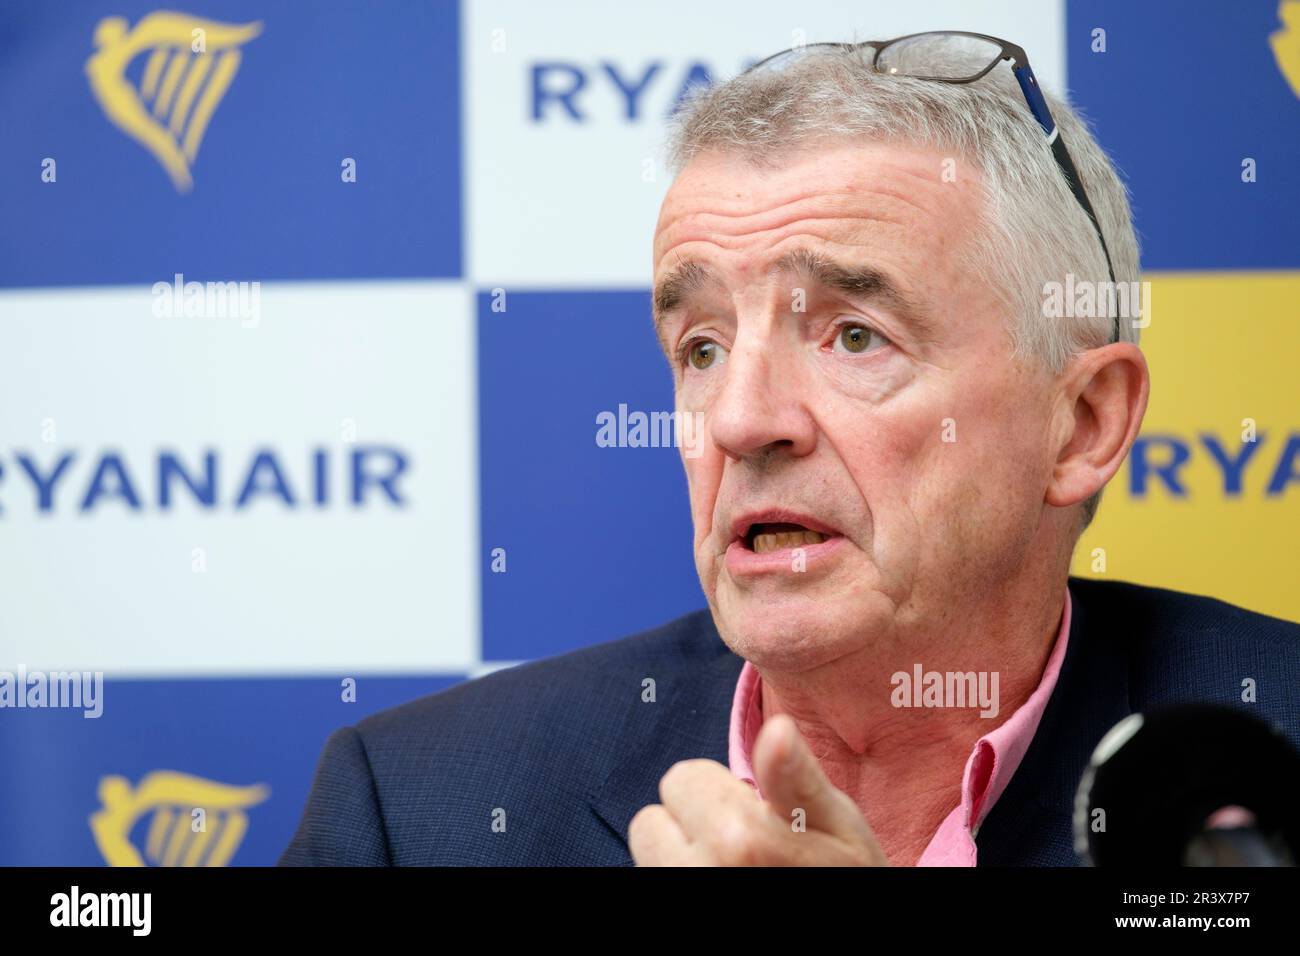 Belgique le 2022/09/07: Michael O'Leary, PDG de Ryanair, s'adressant aux médias pour annoncer que la compagnie aérienne n'offrira pas de vols à partir de Zaventem ce winte Banque D'Images